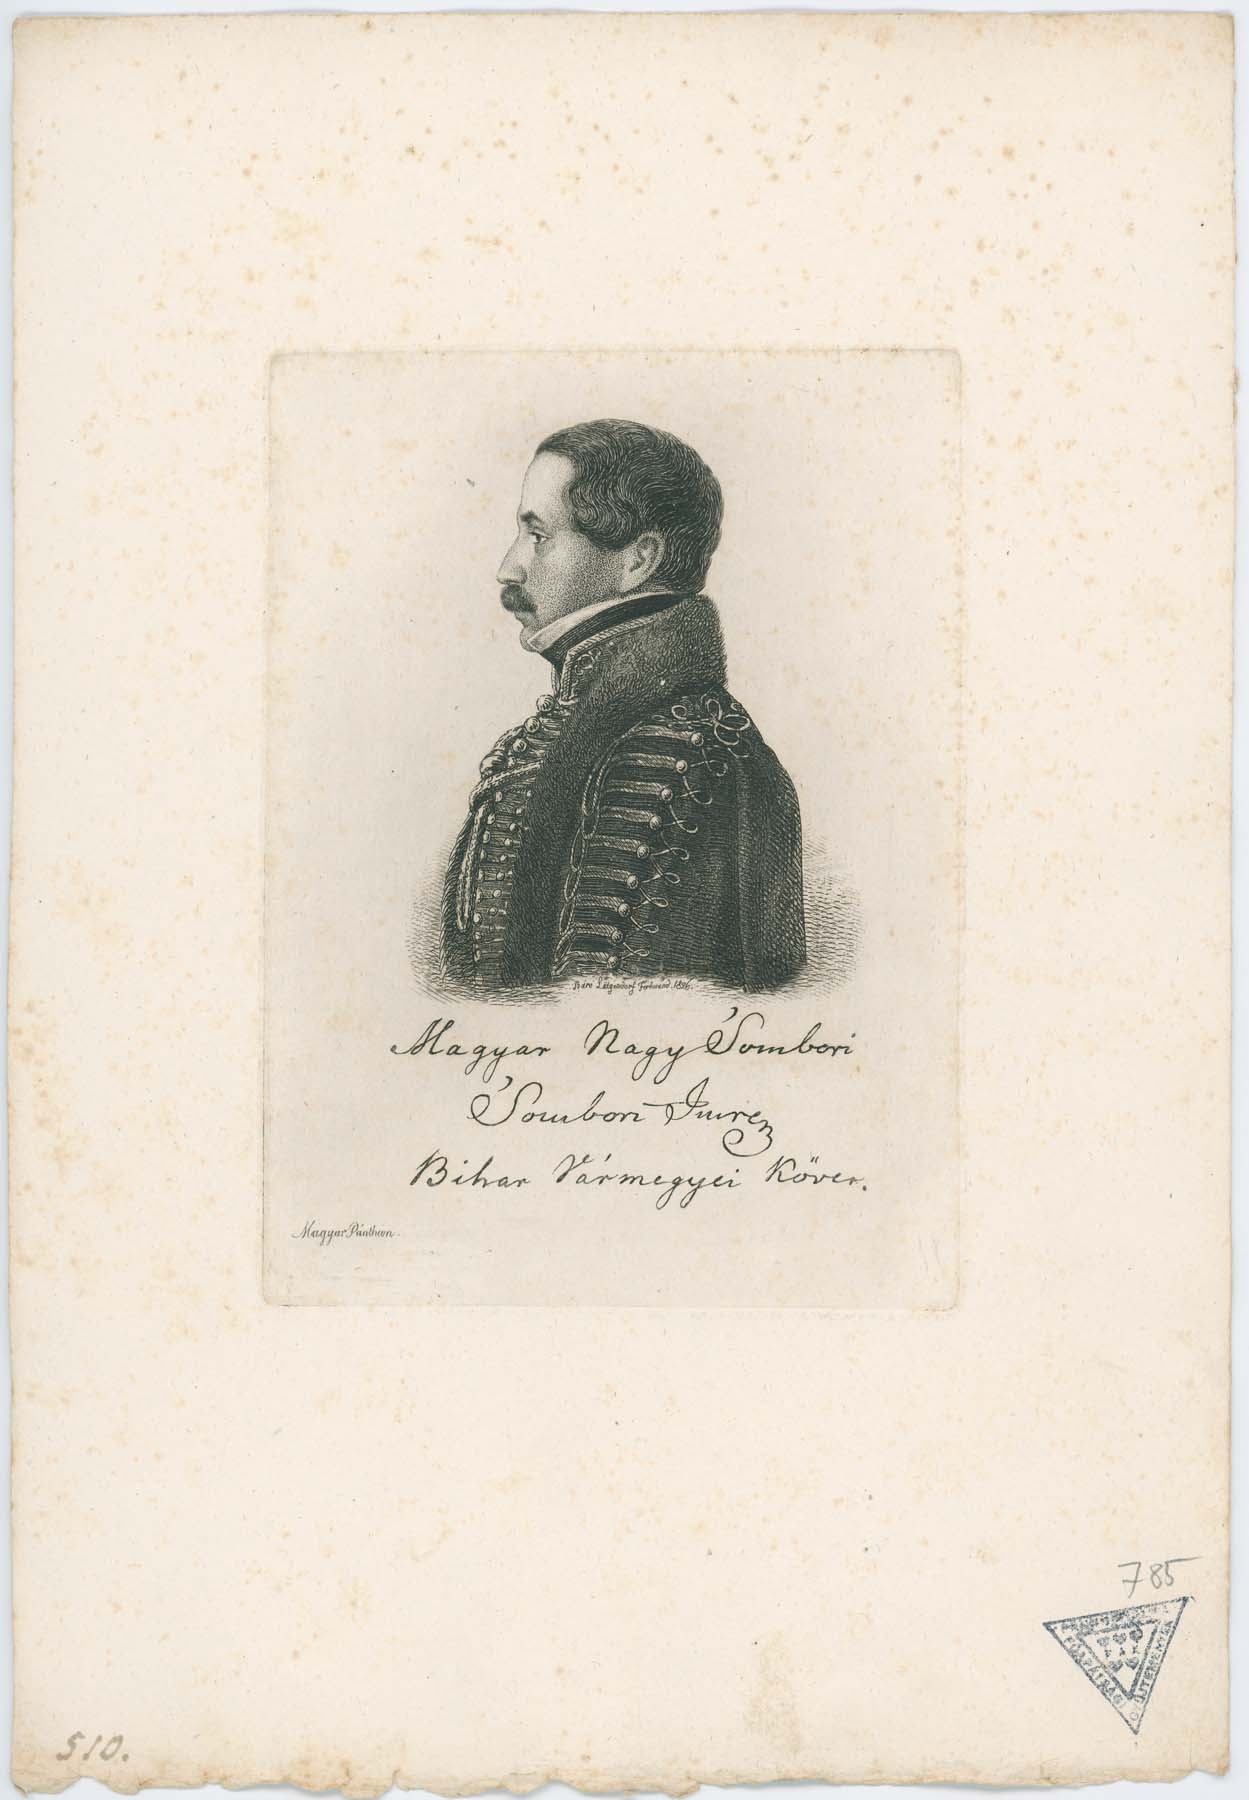 Magyar Nagysombori Sombori Imre Bihar vármegyei követ 1826 (Pannonhalma Főapátsági Múzeum CC BY-NC-SA)